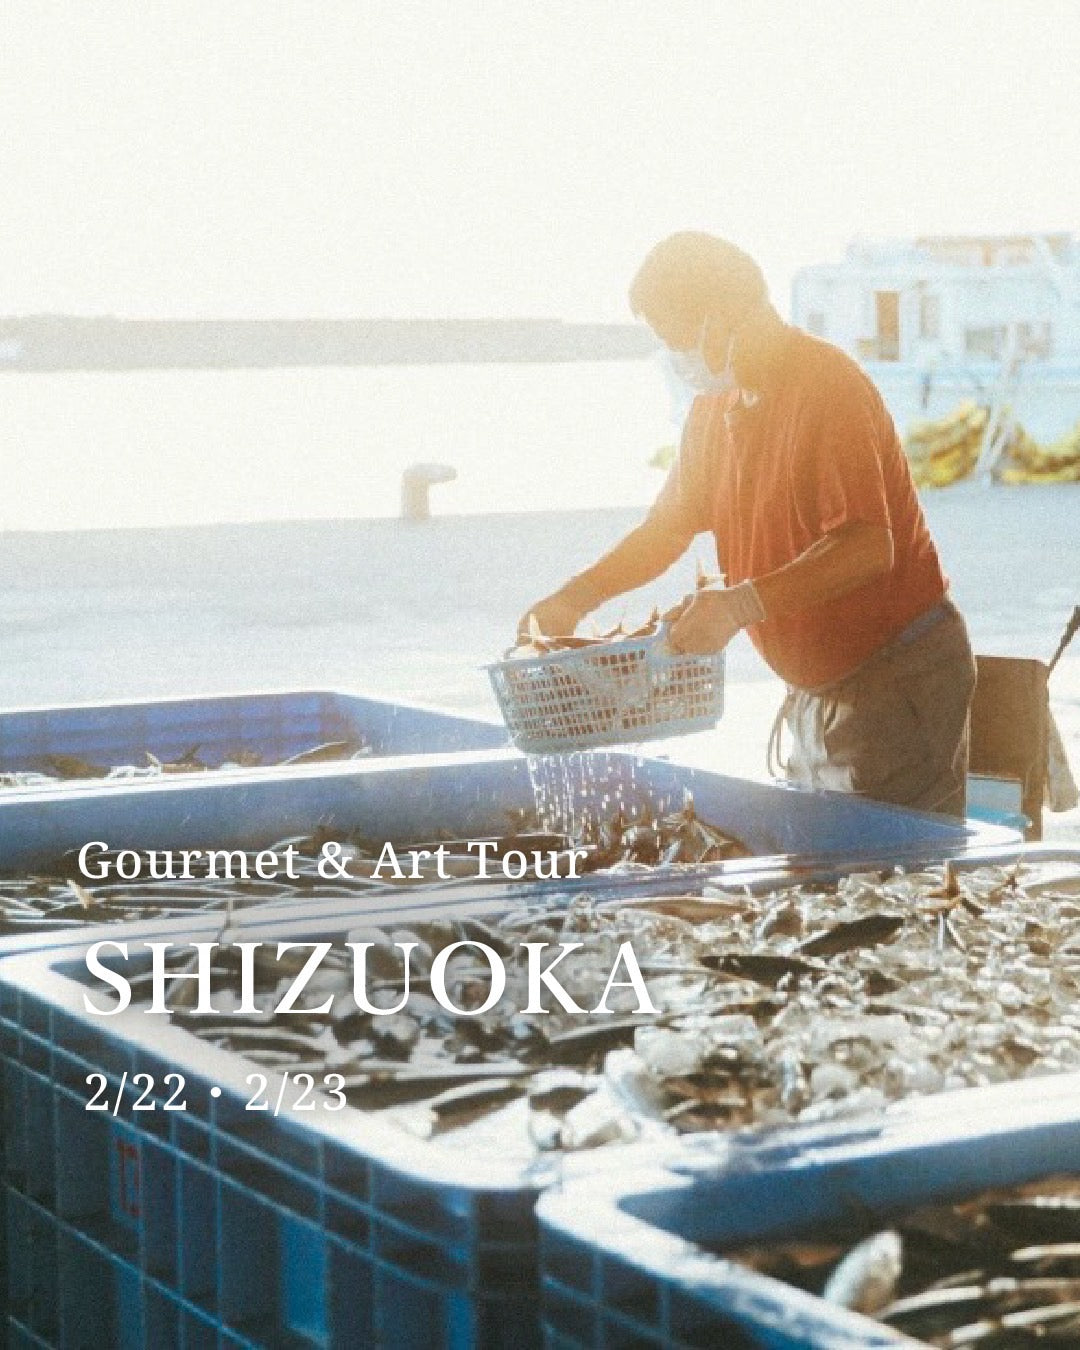 SHIZUOKA KOMERU Gourmet & Art Tour【2/23(Fri)】